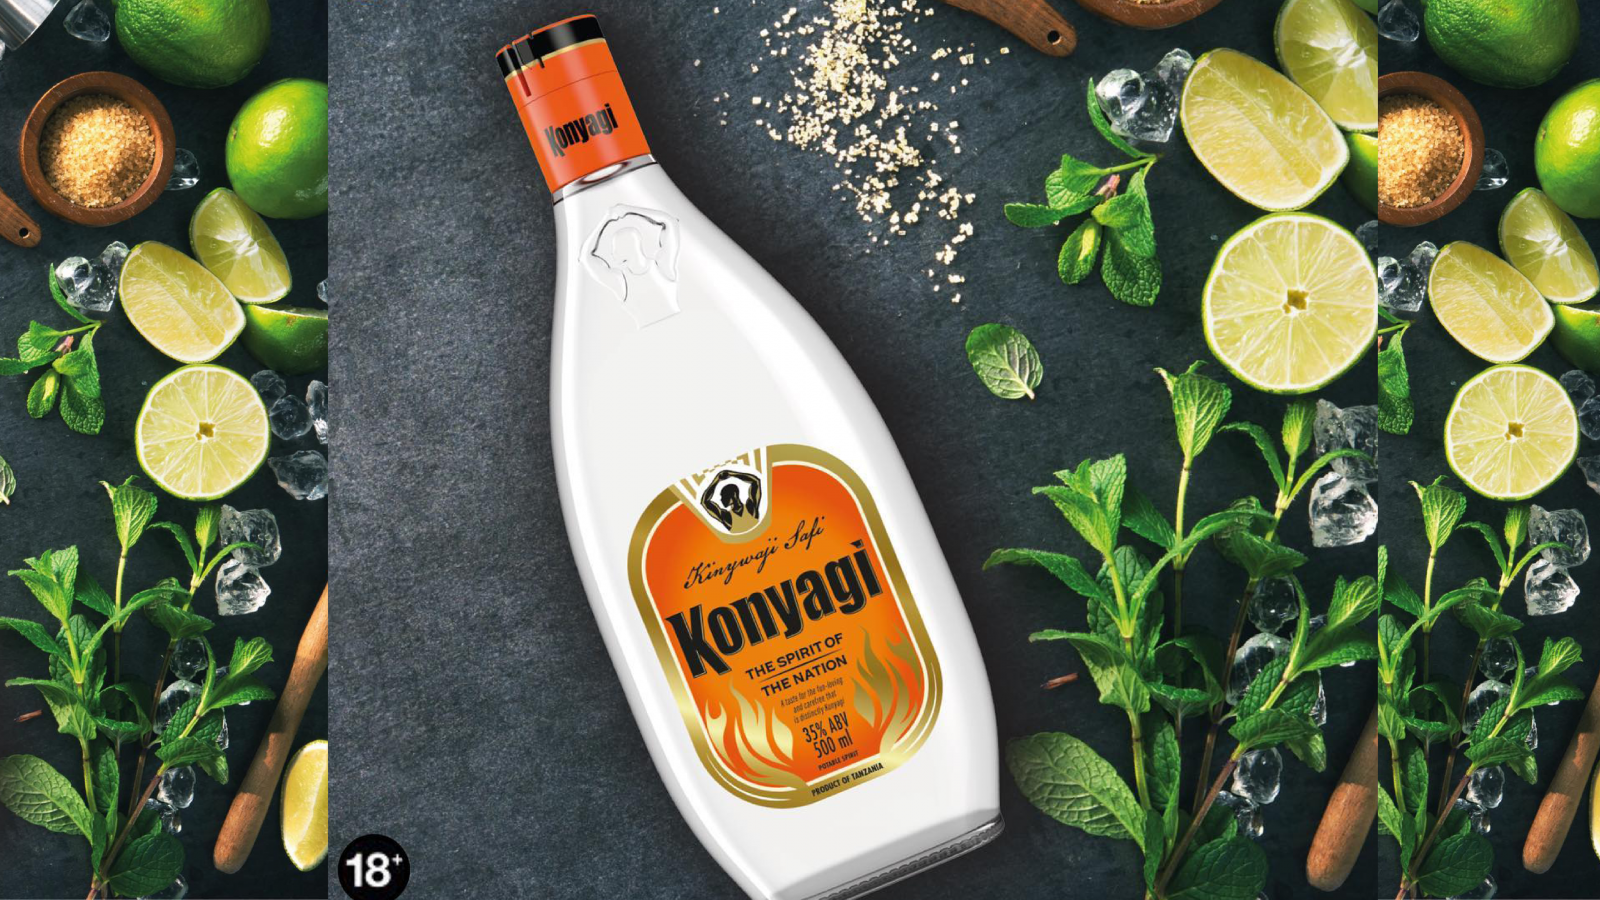 Konyagi bottle new branding